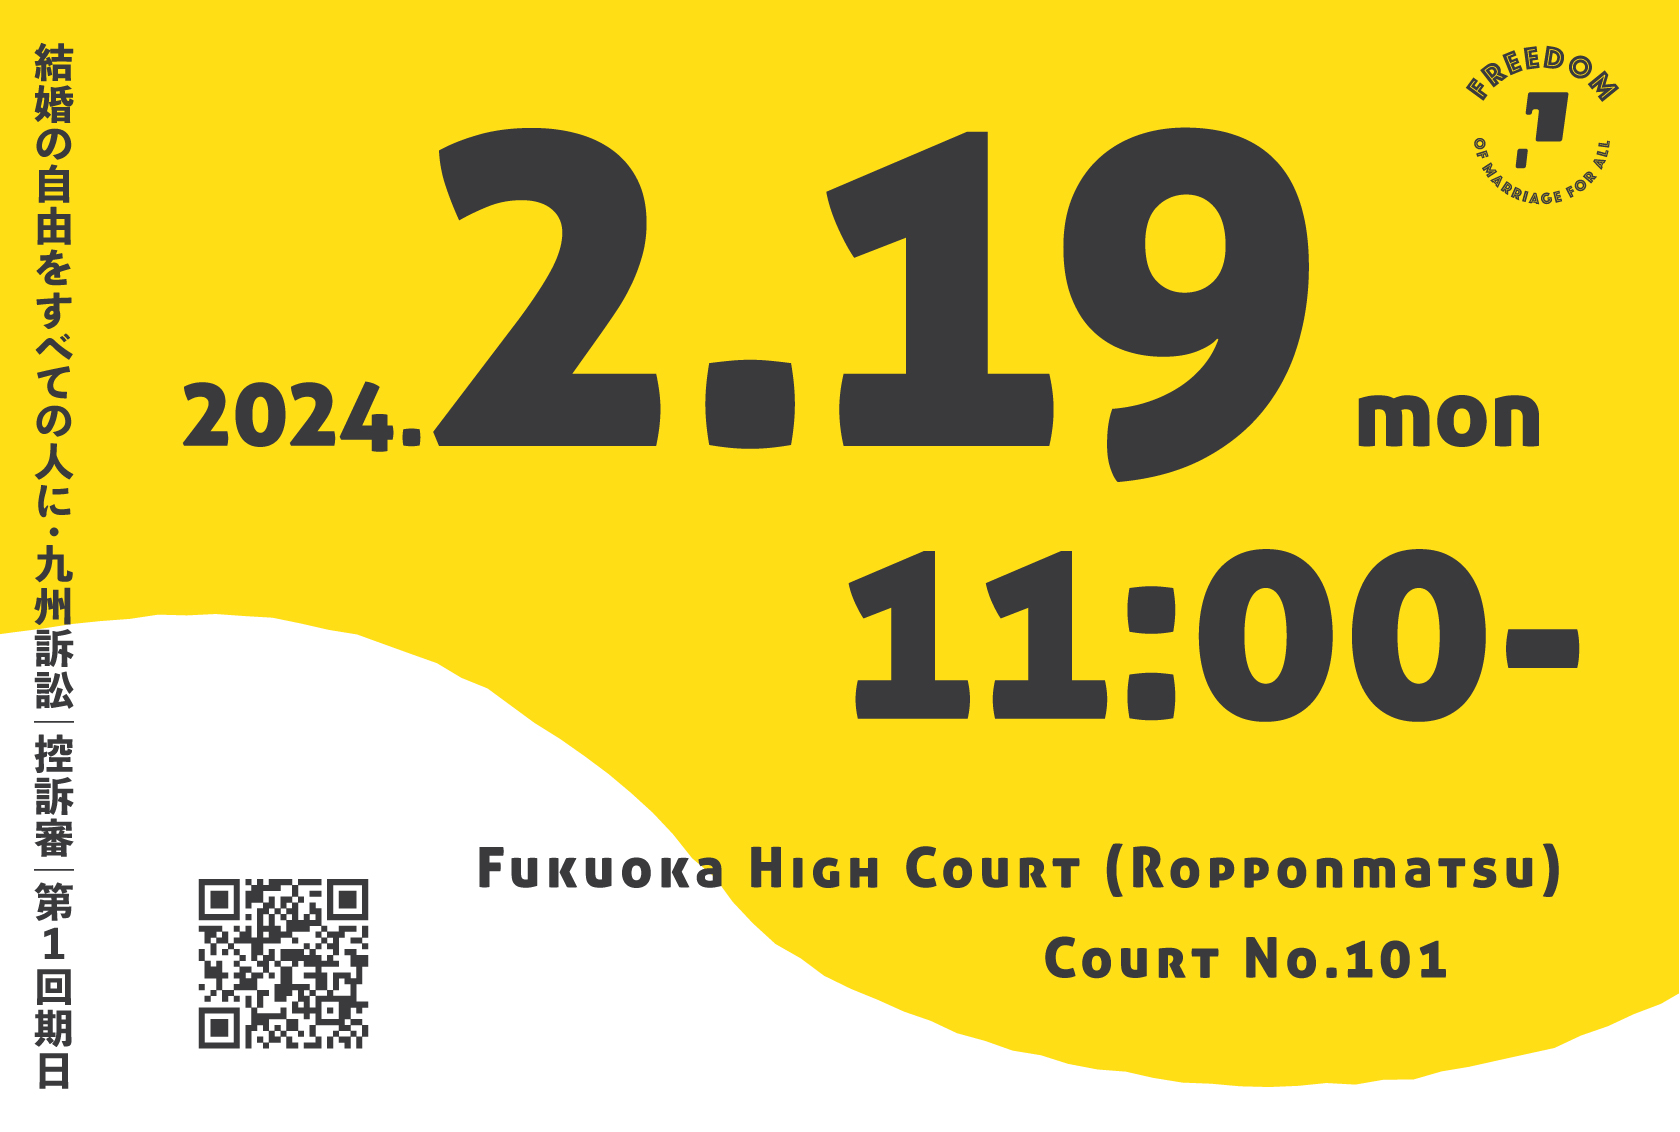 結婚の自由をすべての人に・九州訴訟「控訴審」第１回期日2024.2.19 Mon 11:00-Fukuoka High Court (Ropponmatsu) Court No.101